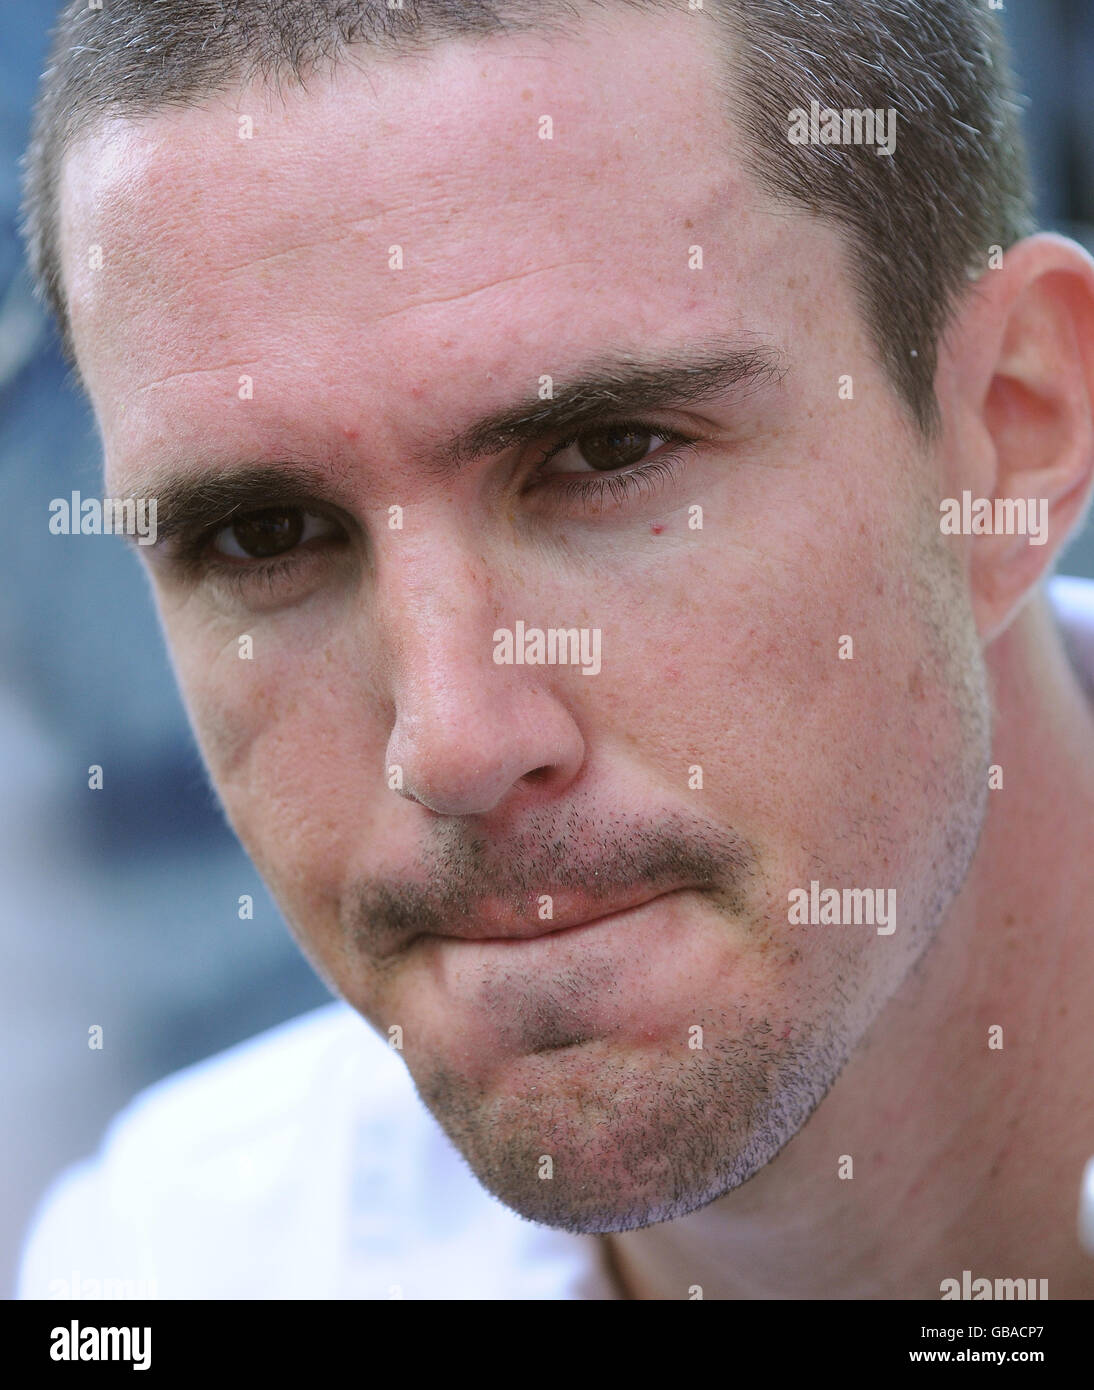 Kevin Pietersen, en Angleterre, parle aux médias lors d'une session de filets au Punjab Cricket Association Stadium, Mohali, en Inde. Banque D'Images